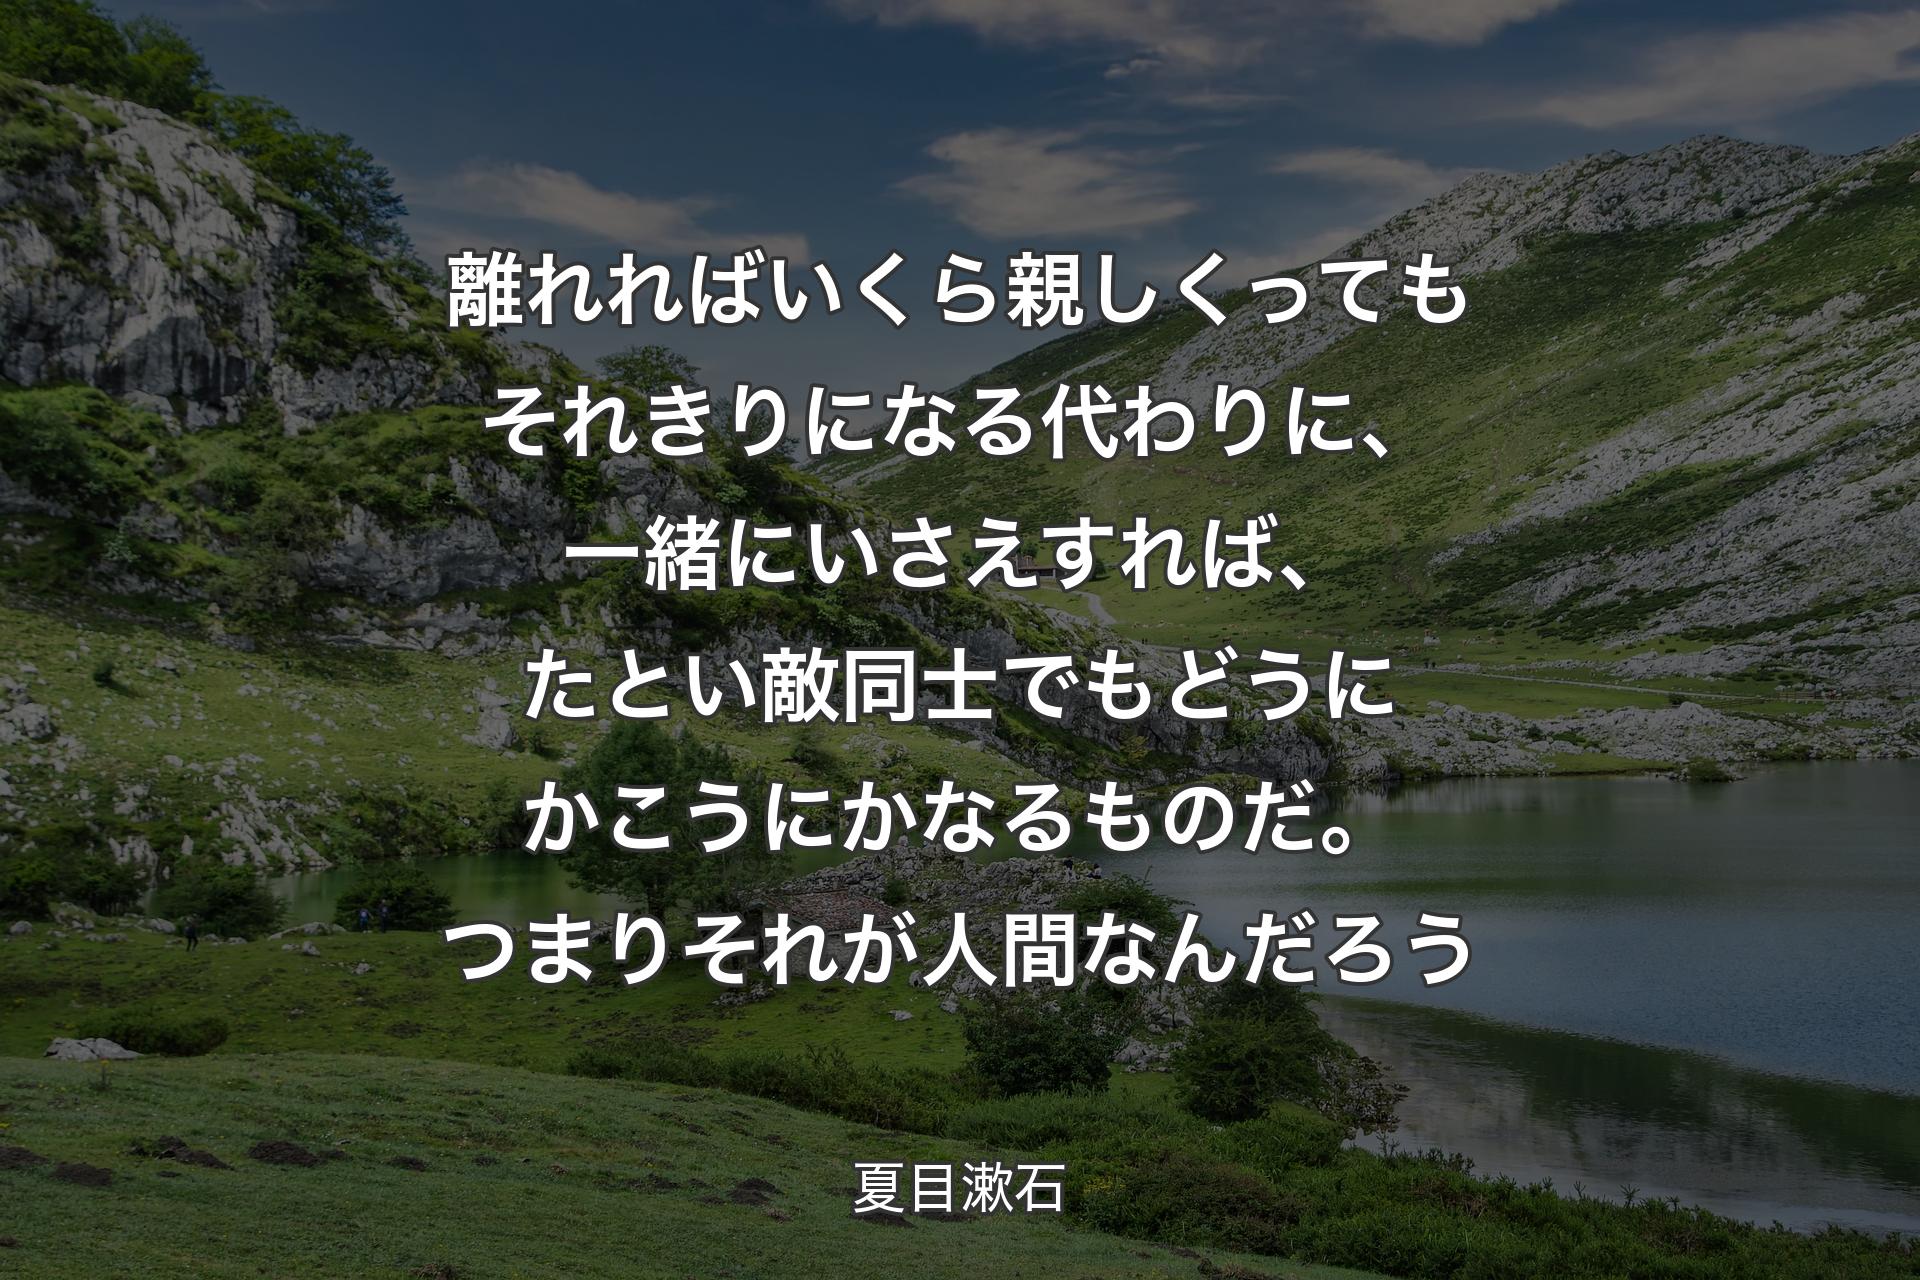 離れればいくら親しくってもそれきりになる代わりに、一緒にいさえすれば、たとい敵同士でもどうにかこうにかなるものだ。つまりそれが人間なんだろう - 夏目漱石